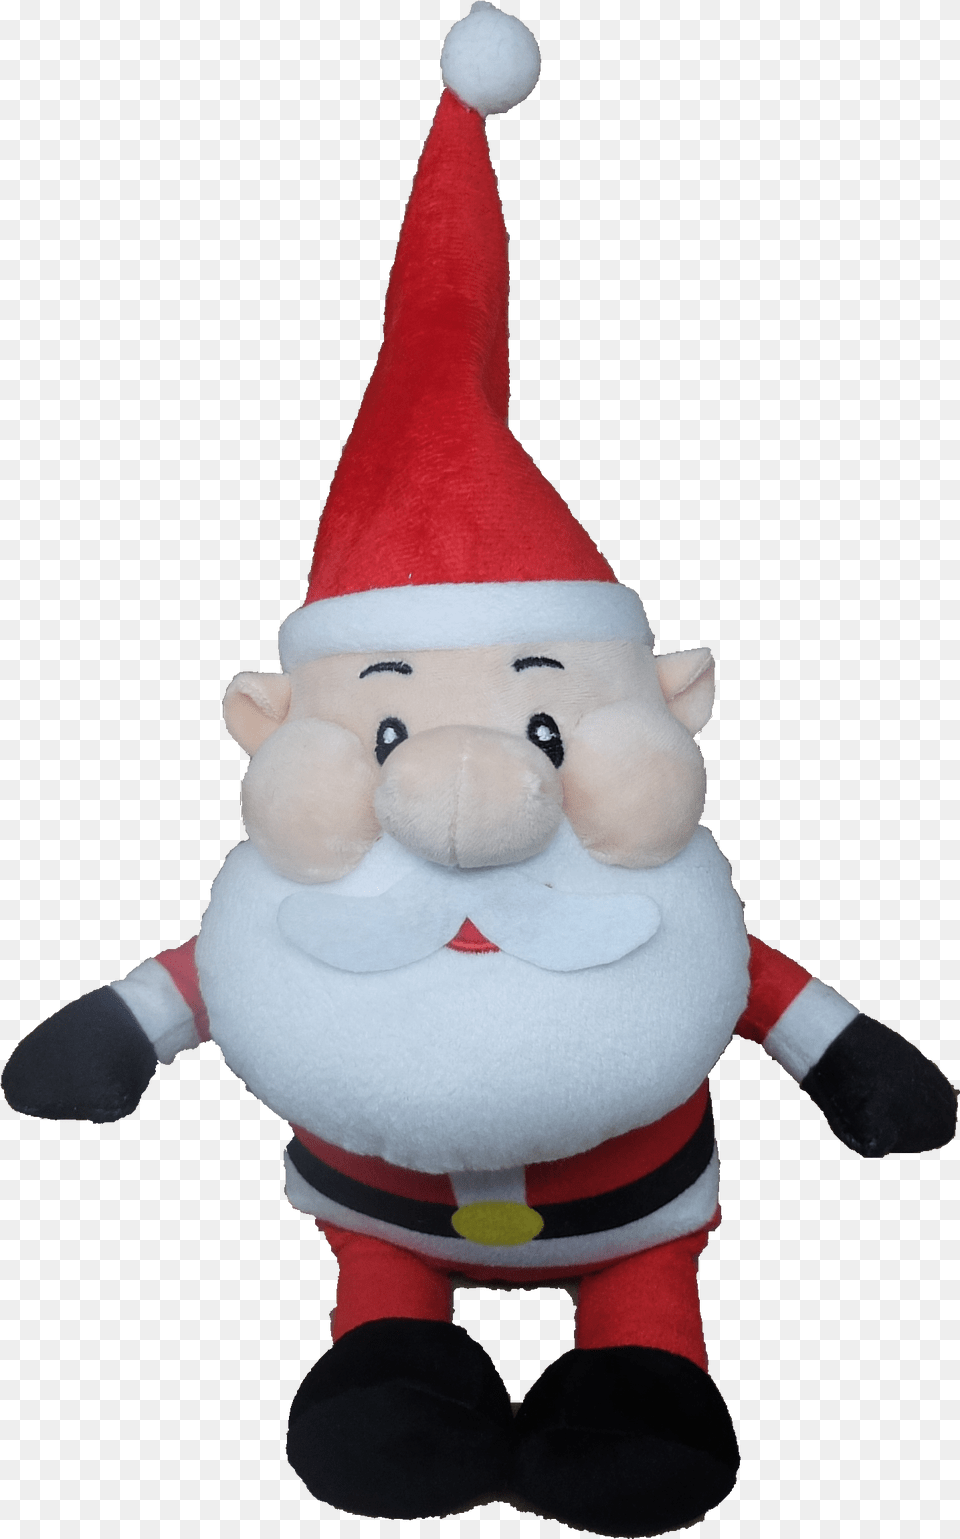 Santa Claus, Plush, Toy Free Transparent Png